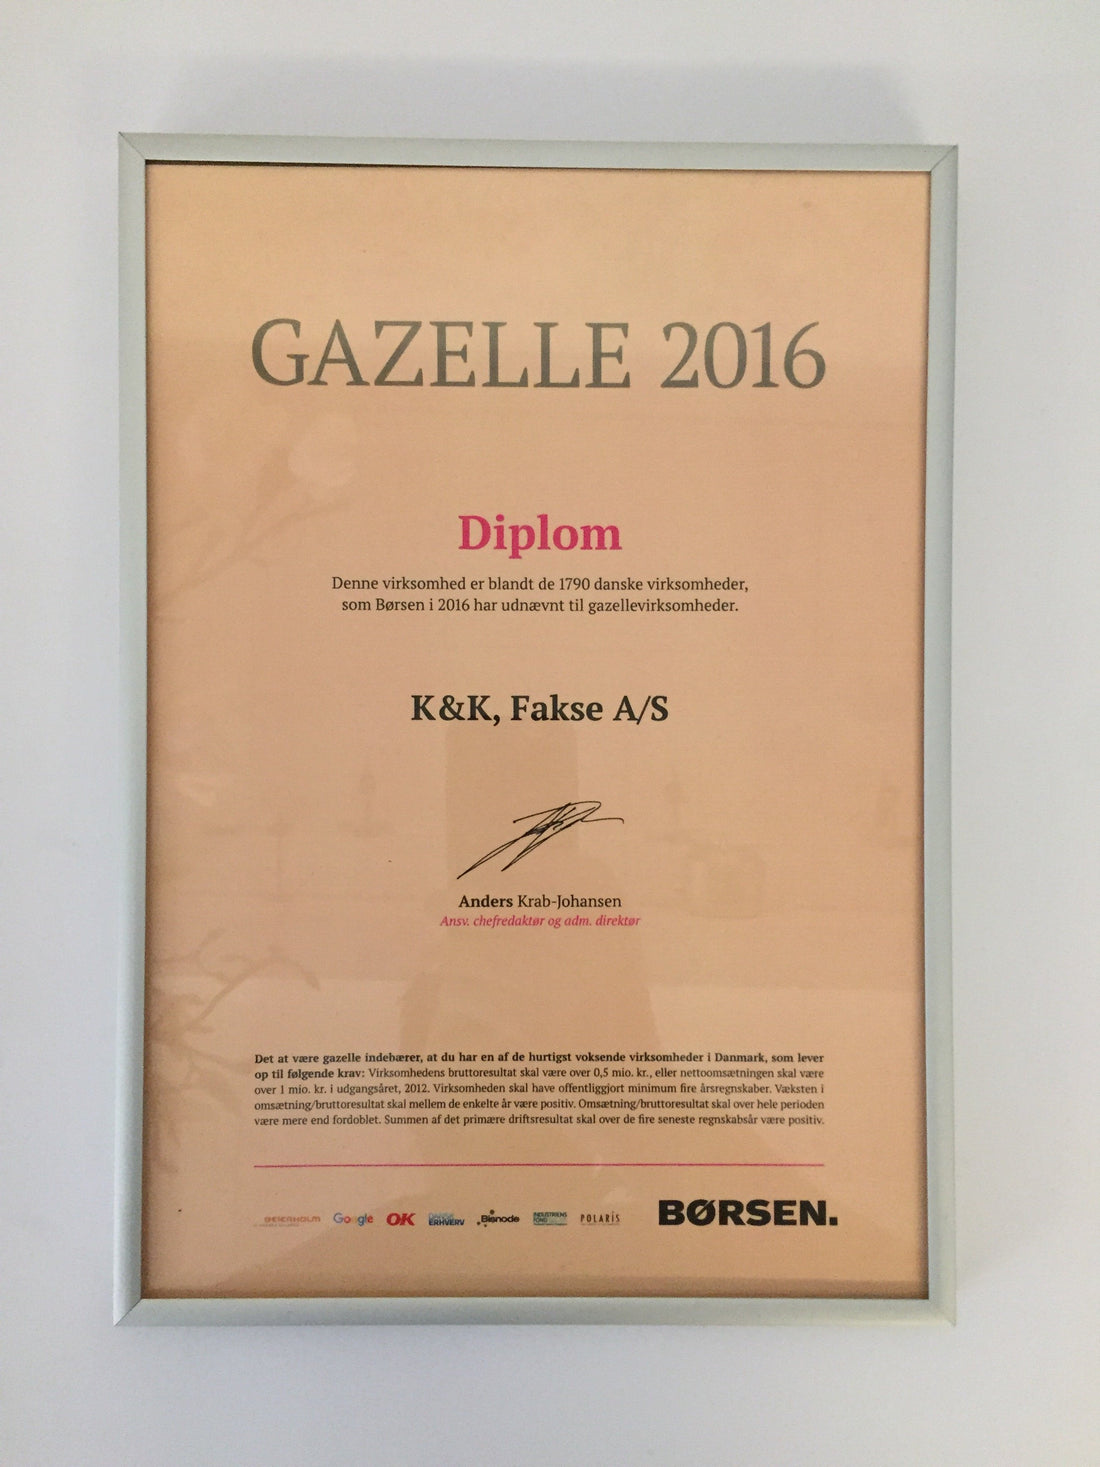 KopK.dk erhält zum zweiten Mal den Børsens Gazelle Award 2016